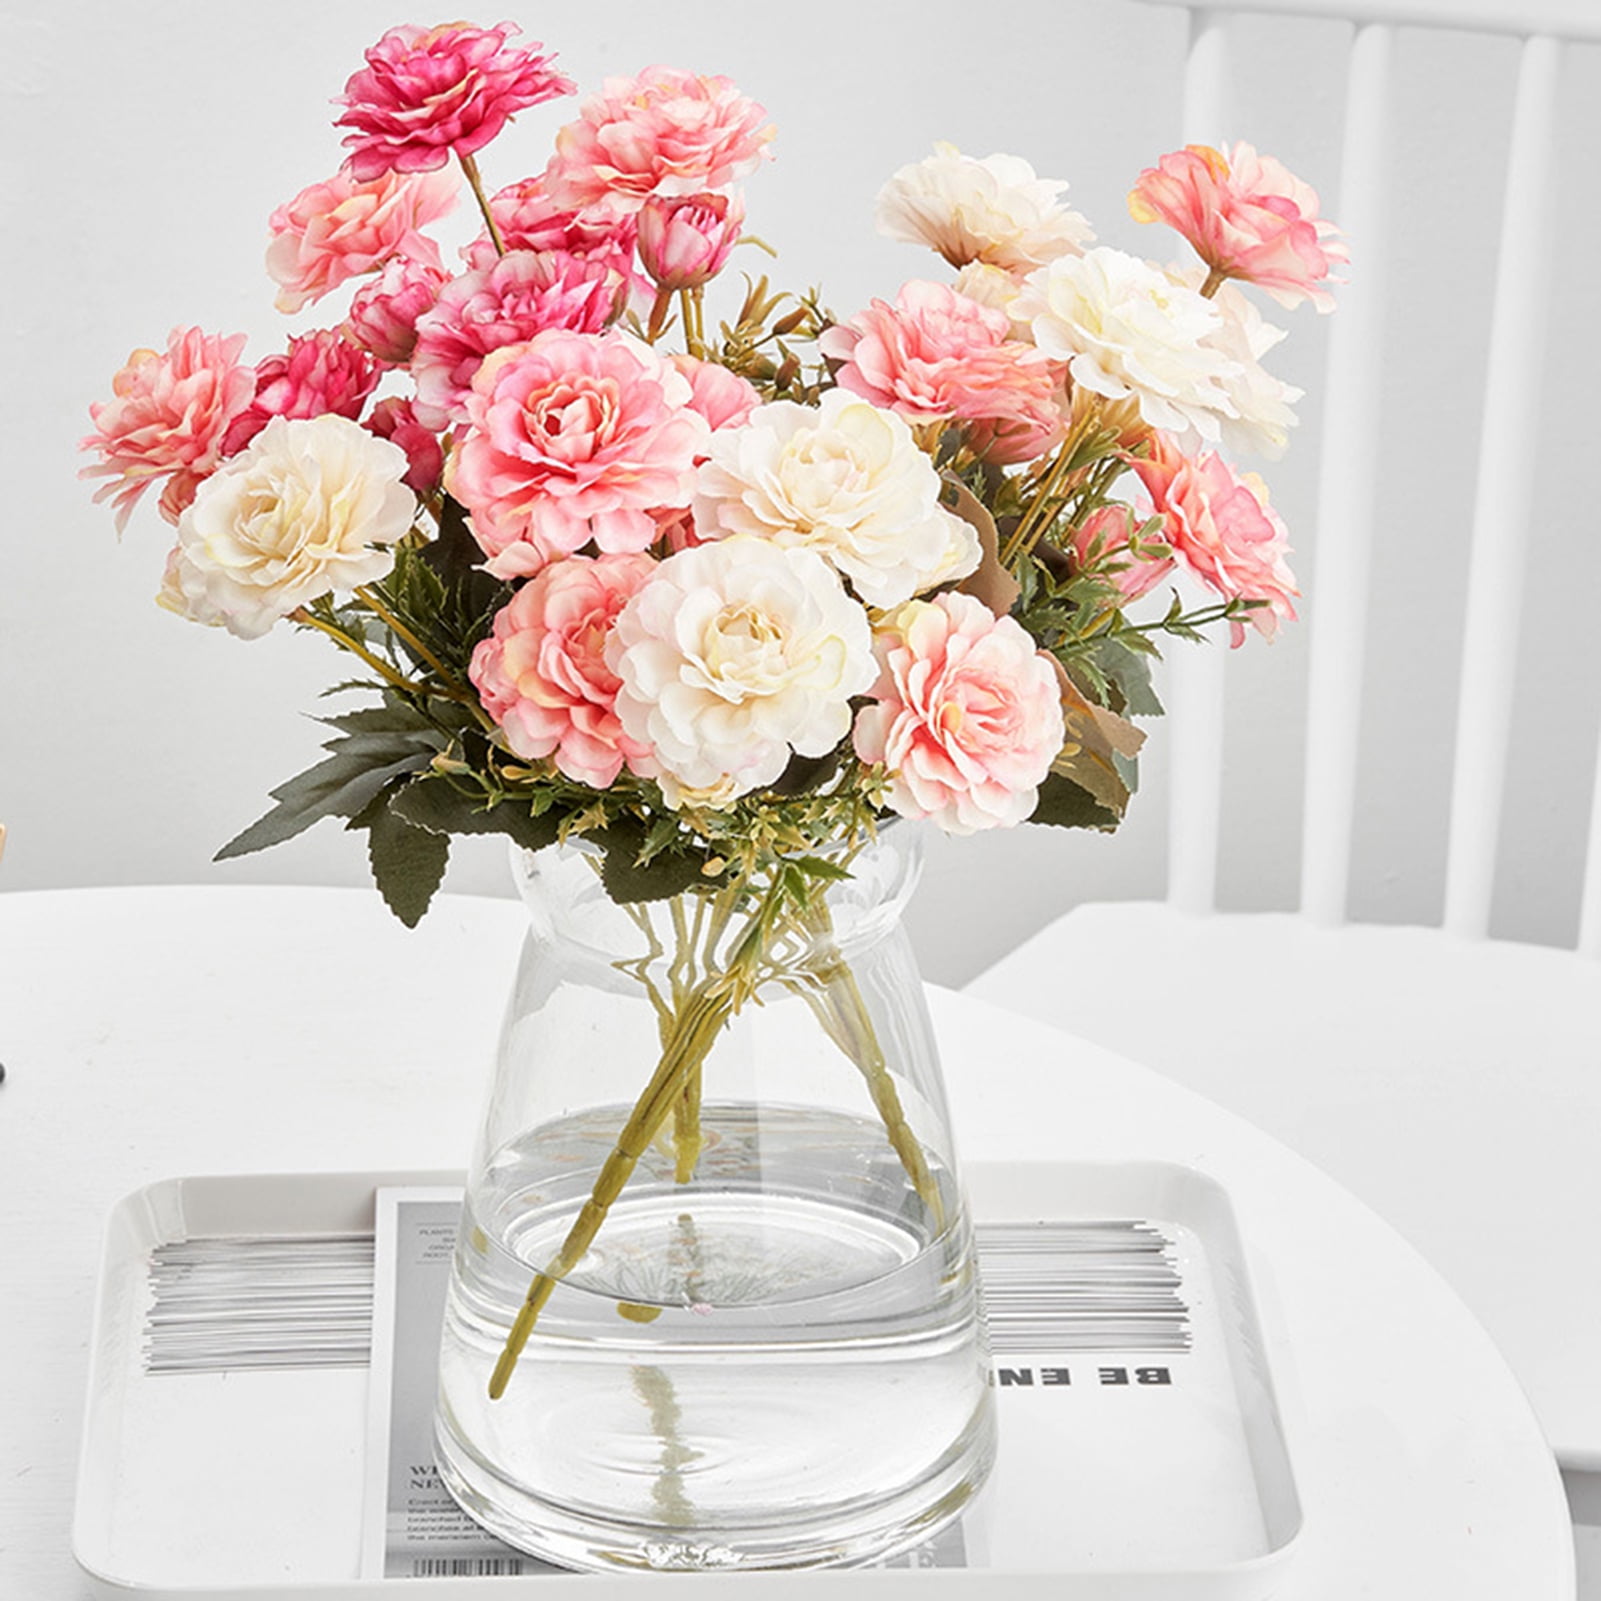 Table Flowers 12 Artificial Peony Silk Flowers Bouquet Event Home Decor & Floral Arrangement